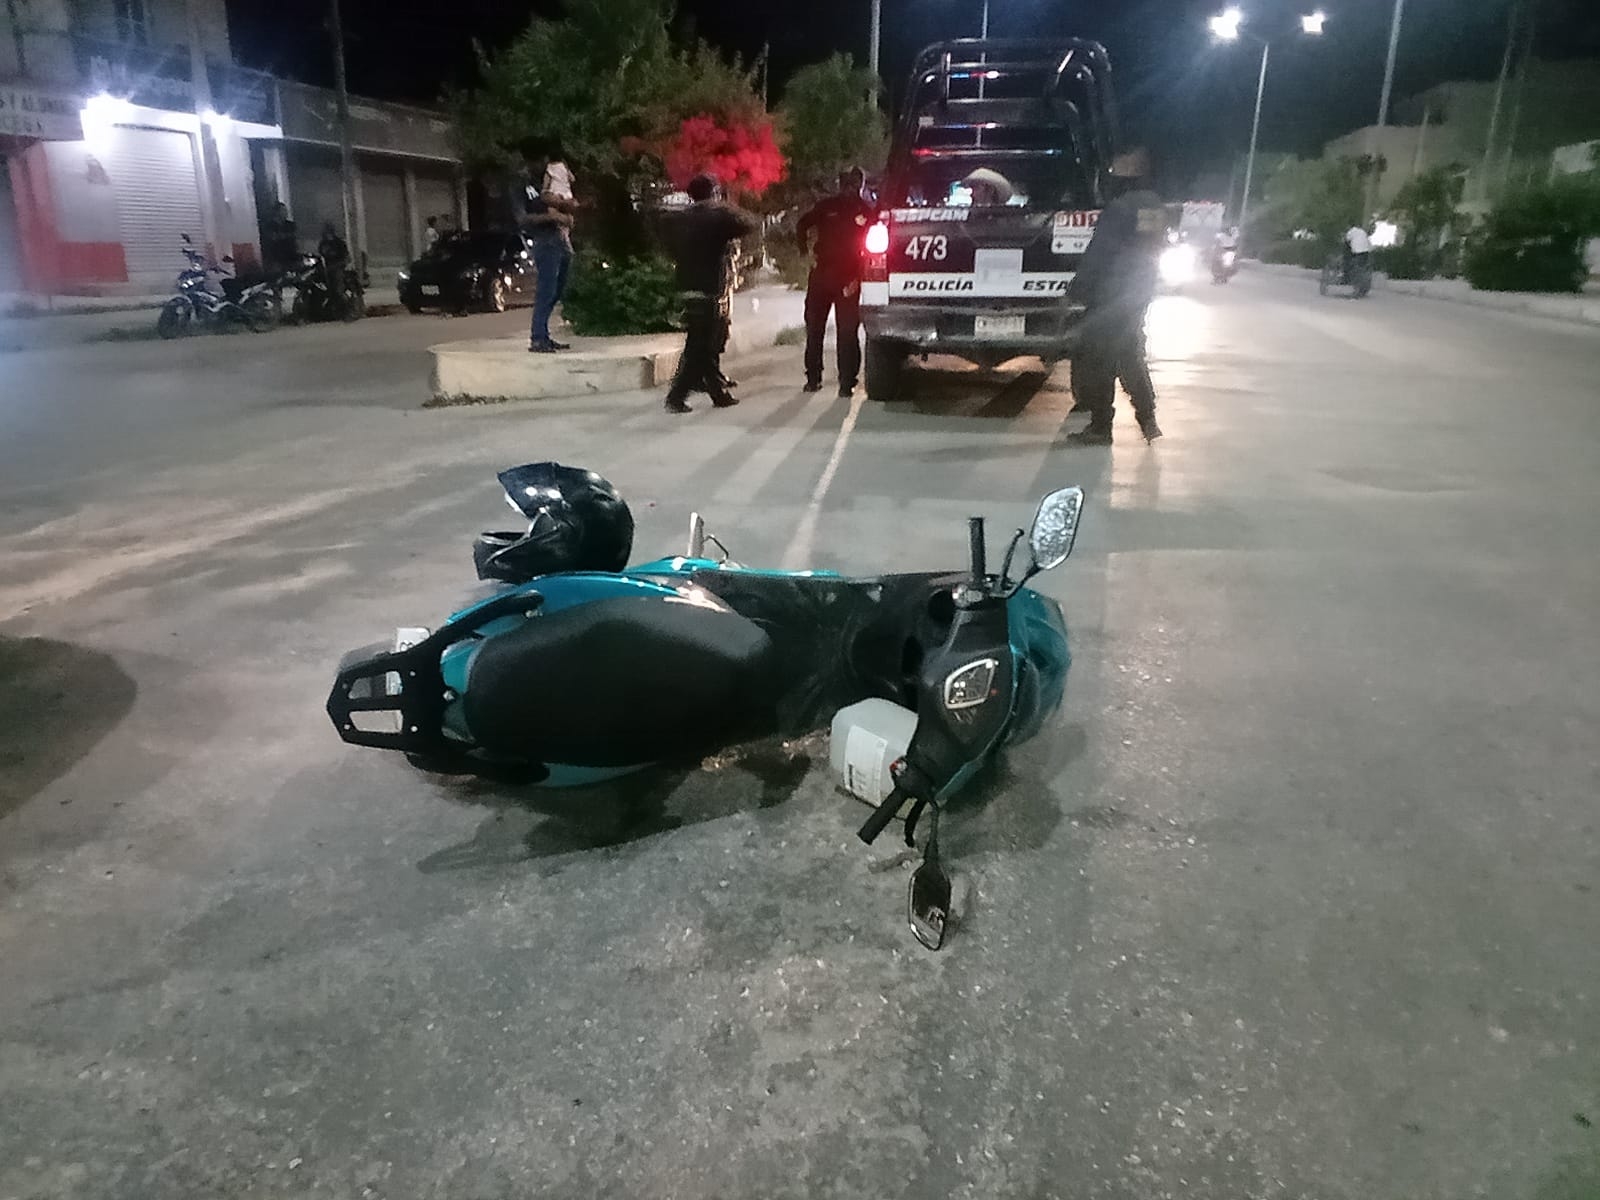 La motocicleta quedó tiras en la calle tras el accidente provocado por un hombre que intentó darse a la fuga